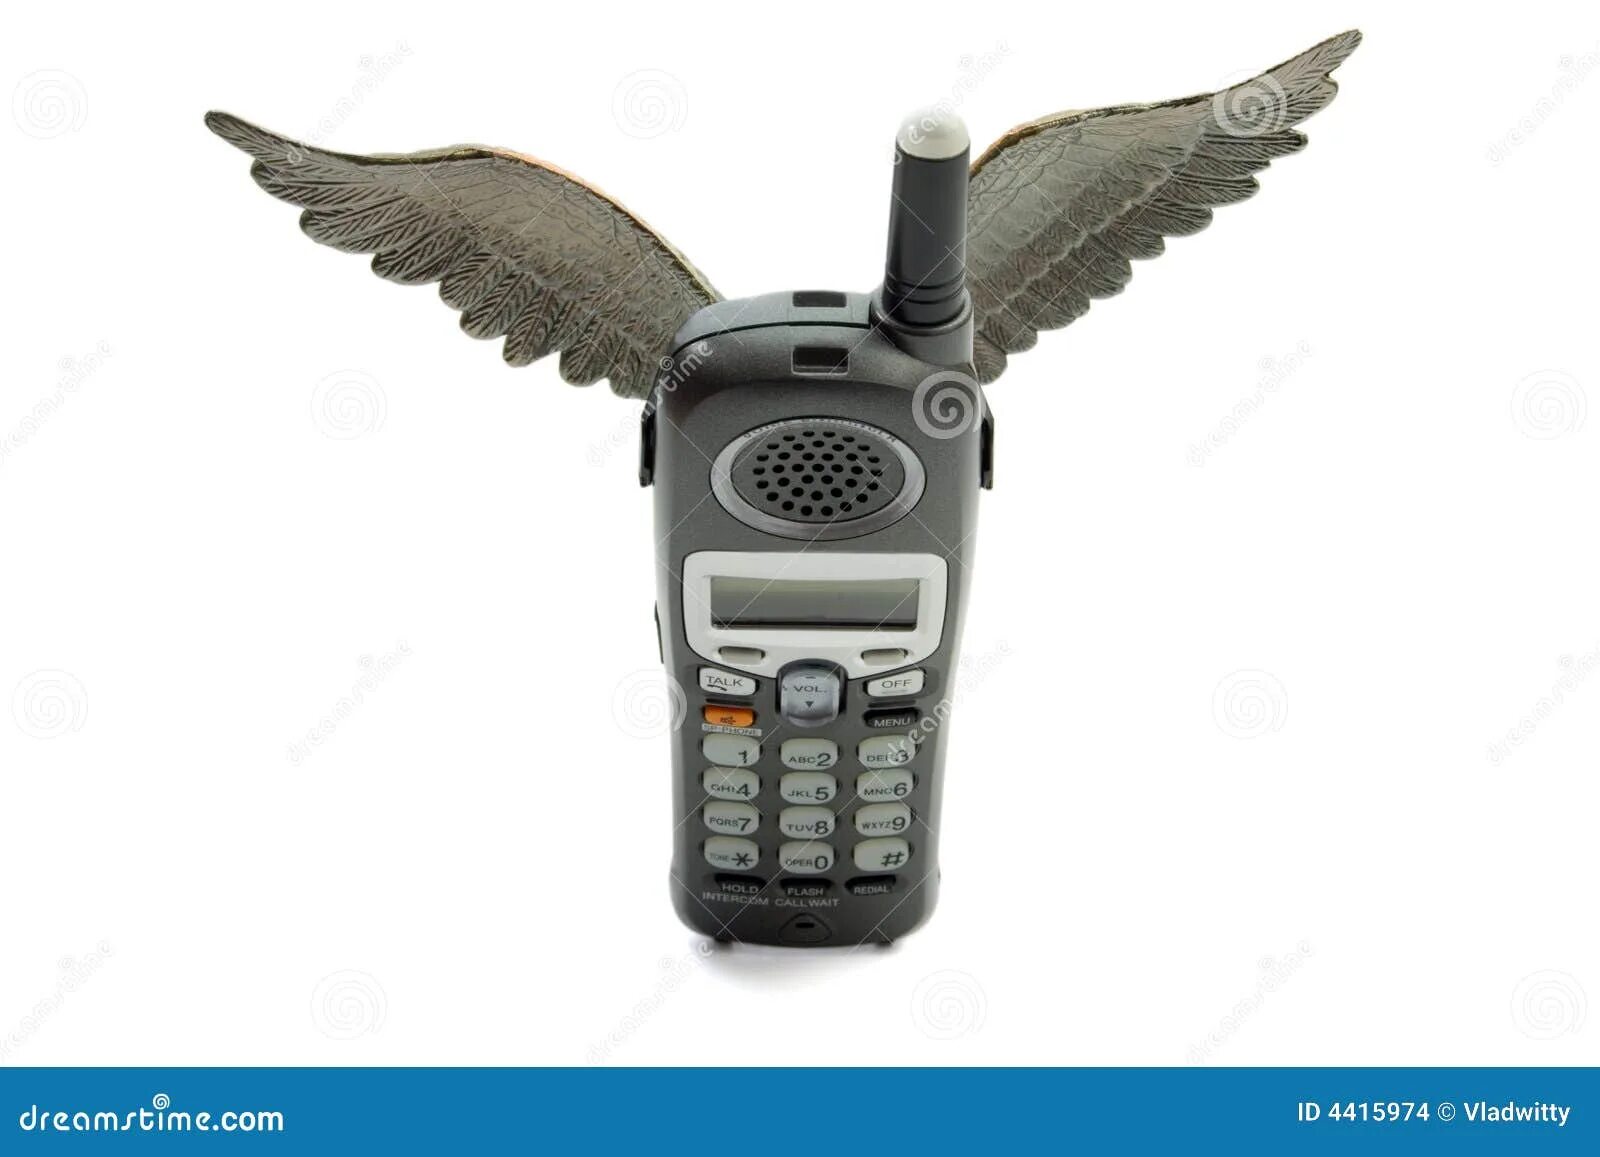 Телефон будет летать. Летающий телефон. Летучая с телефоном. Телефон летит. Летающий телефон картинки.